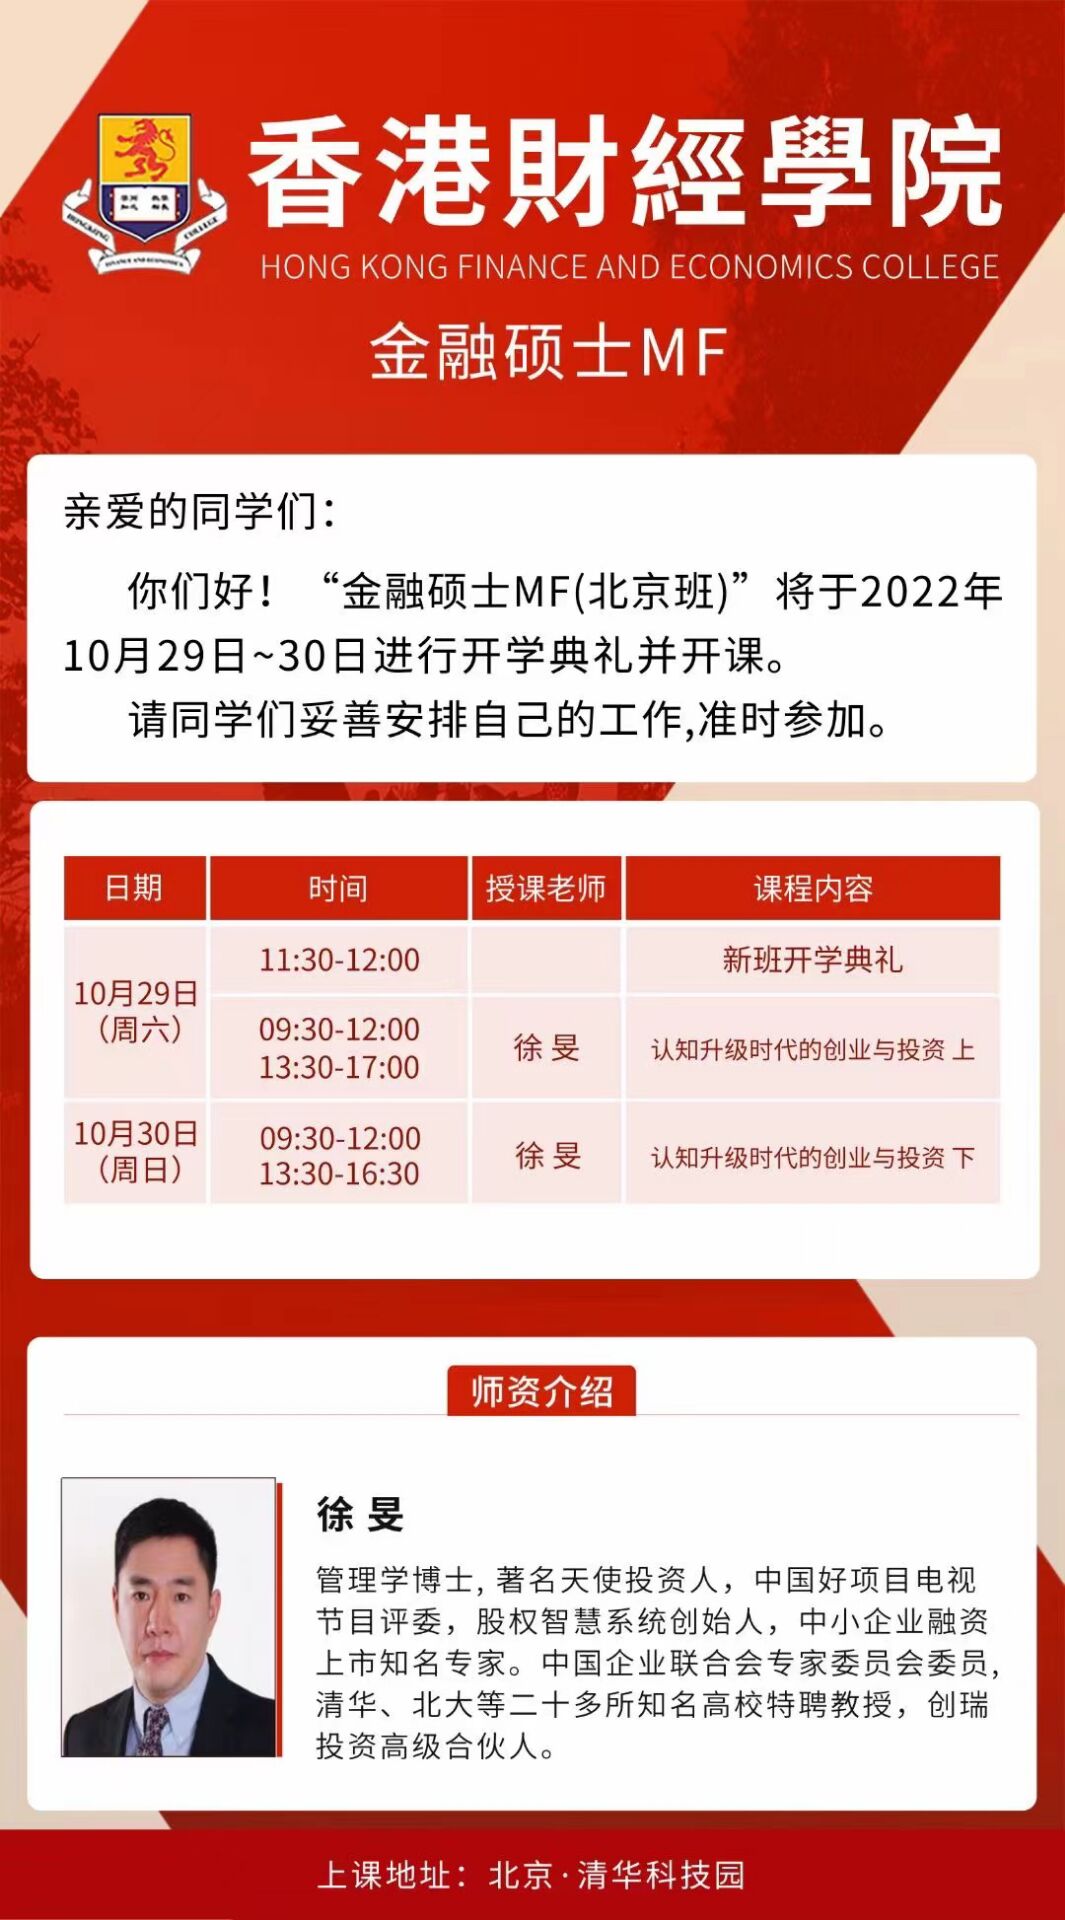 香港财经学院金融硕士MF班2022年10月29-30日开课安排